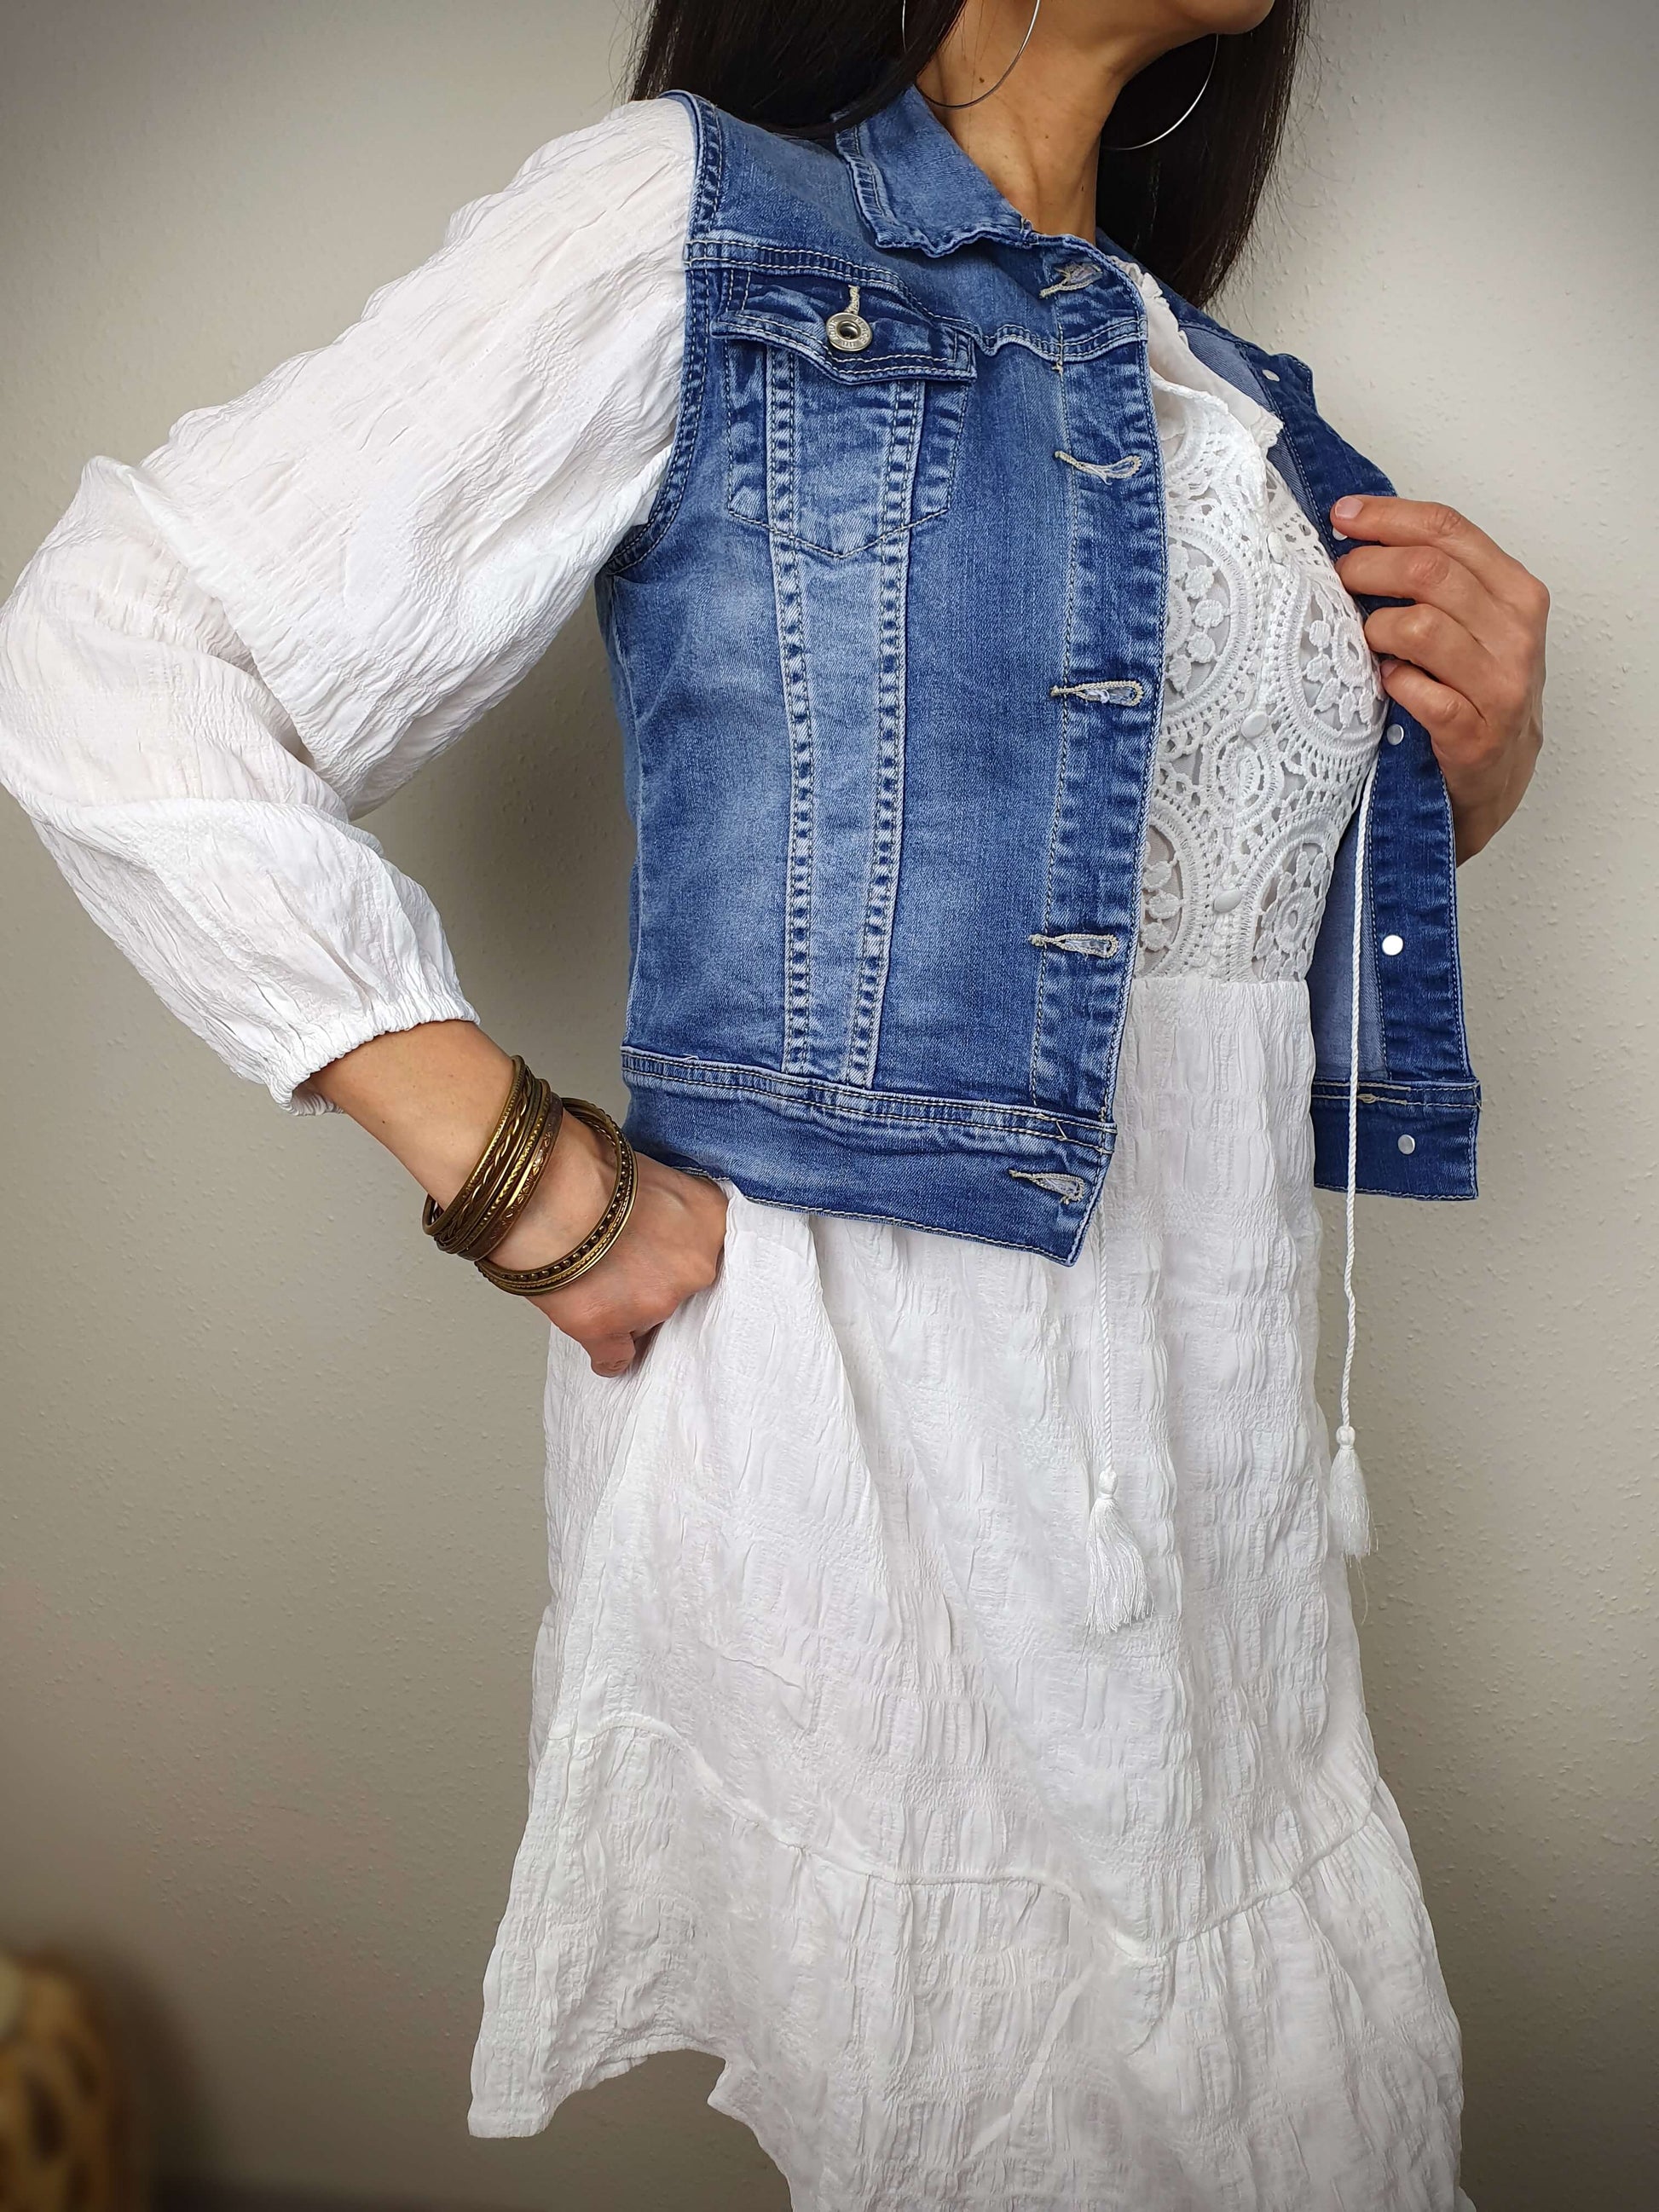 Veste en jean femme sans manche bleu à decouvrir sur www.gayano.fr